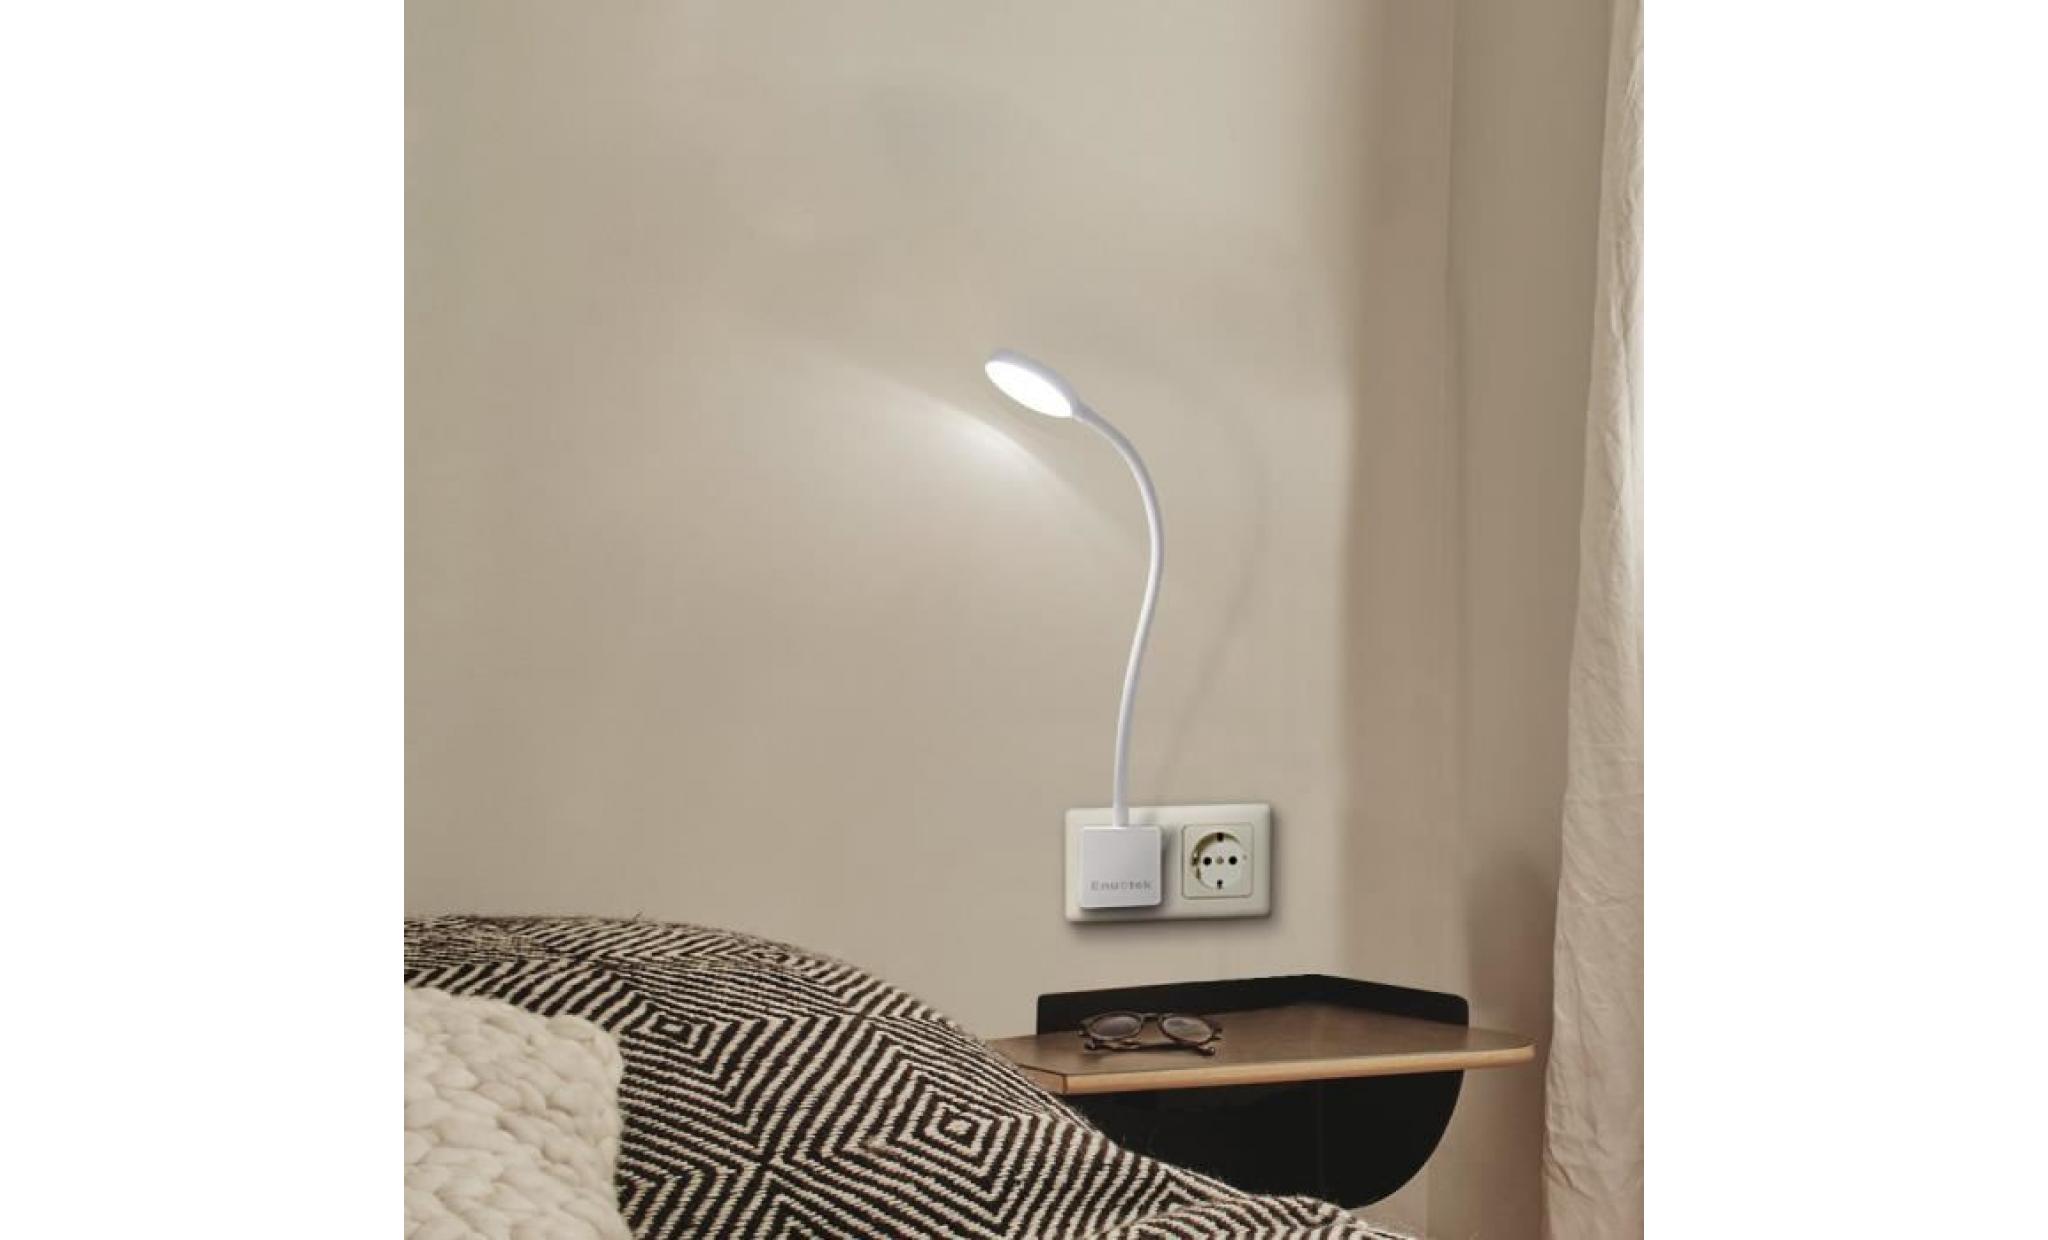 lampe veilleuse de lecture led applique murale dimmable à brancher directement sur prise de courant 4w pas fonction de telecommande pas cher